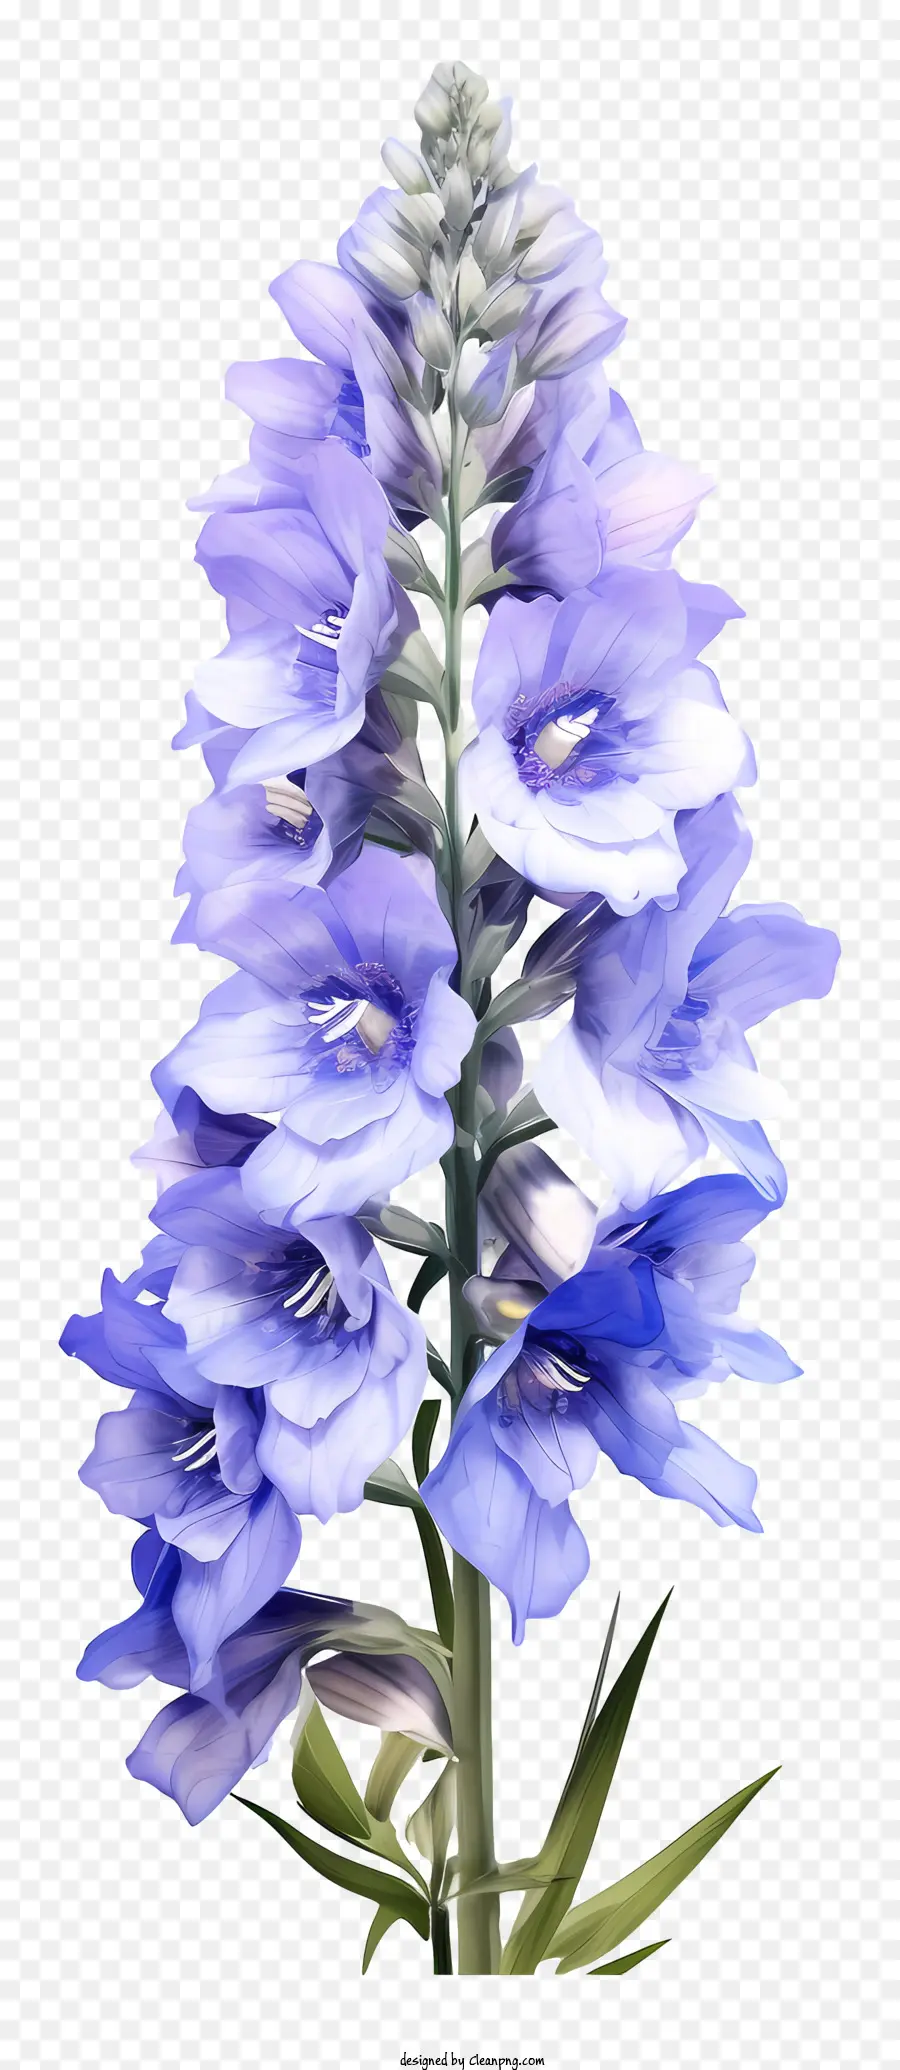 fiore blu - Fiore blu con petali chiusi e foglie verdi